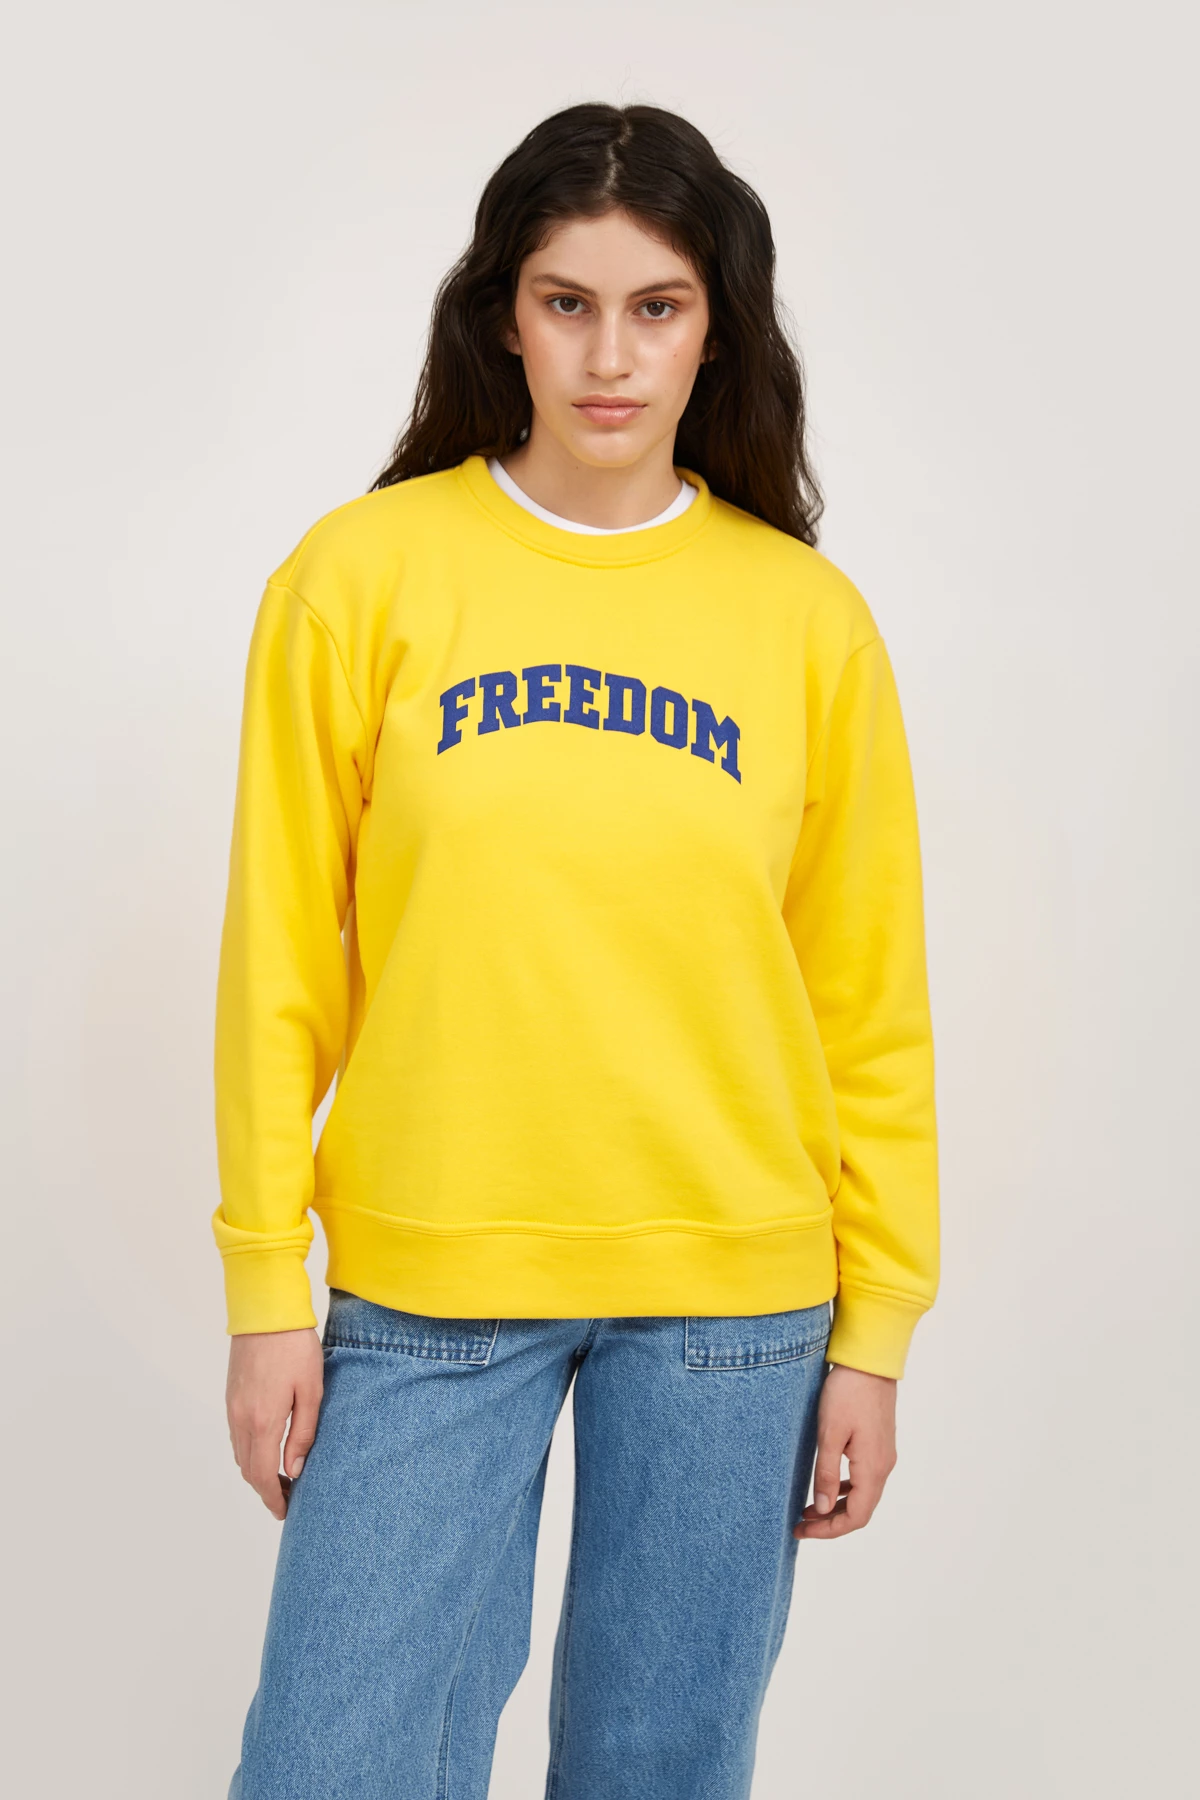 Жёлтый трикотажный свитшот с принтом "Freedom", фото 3